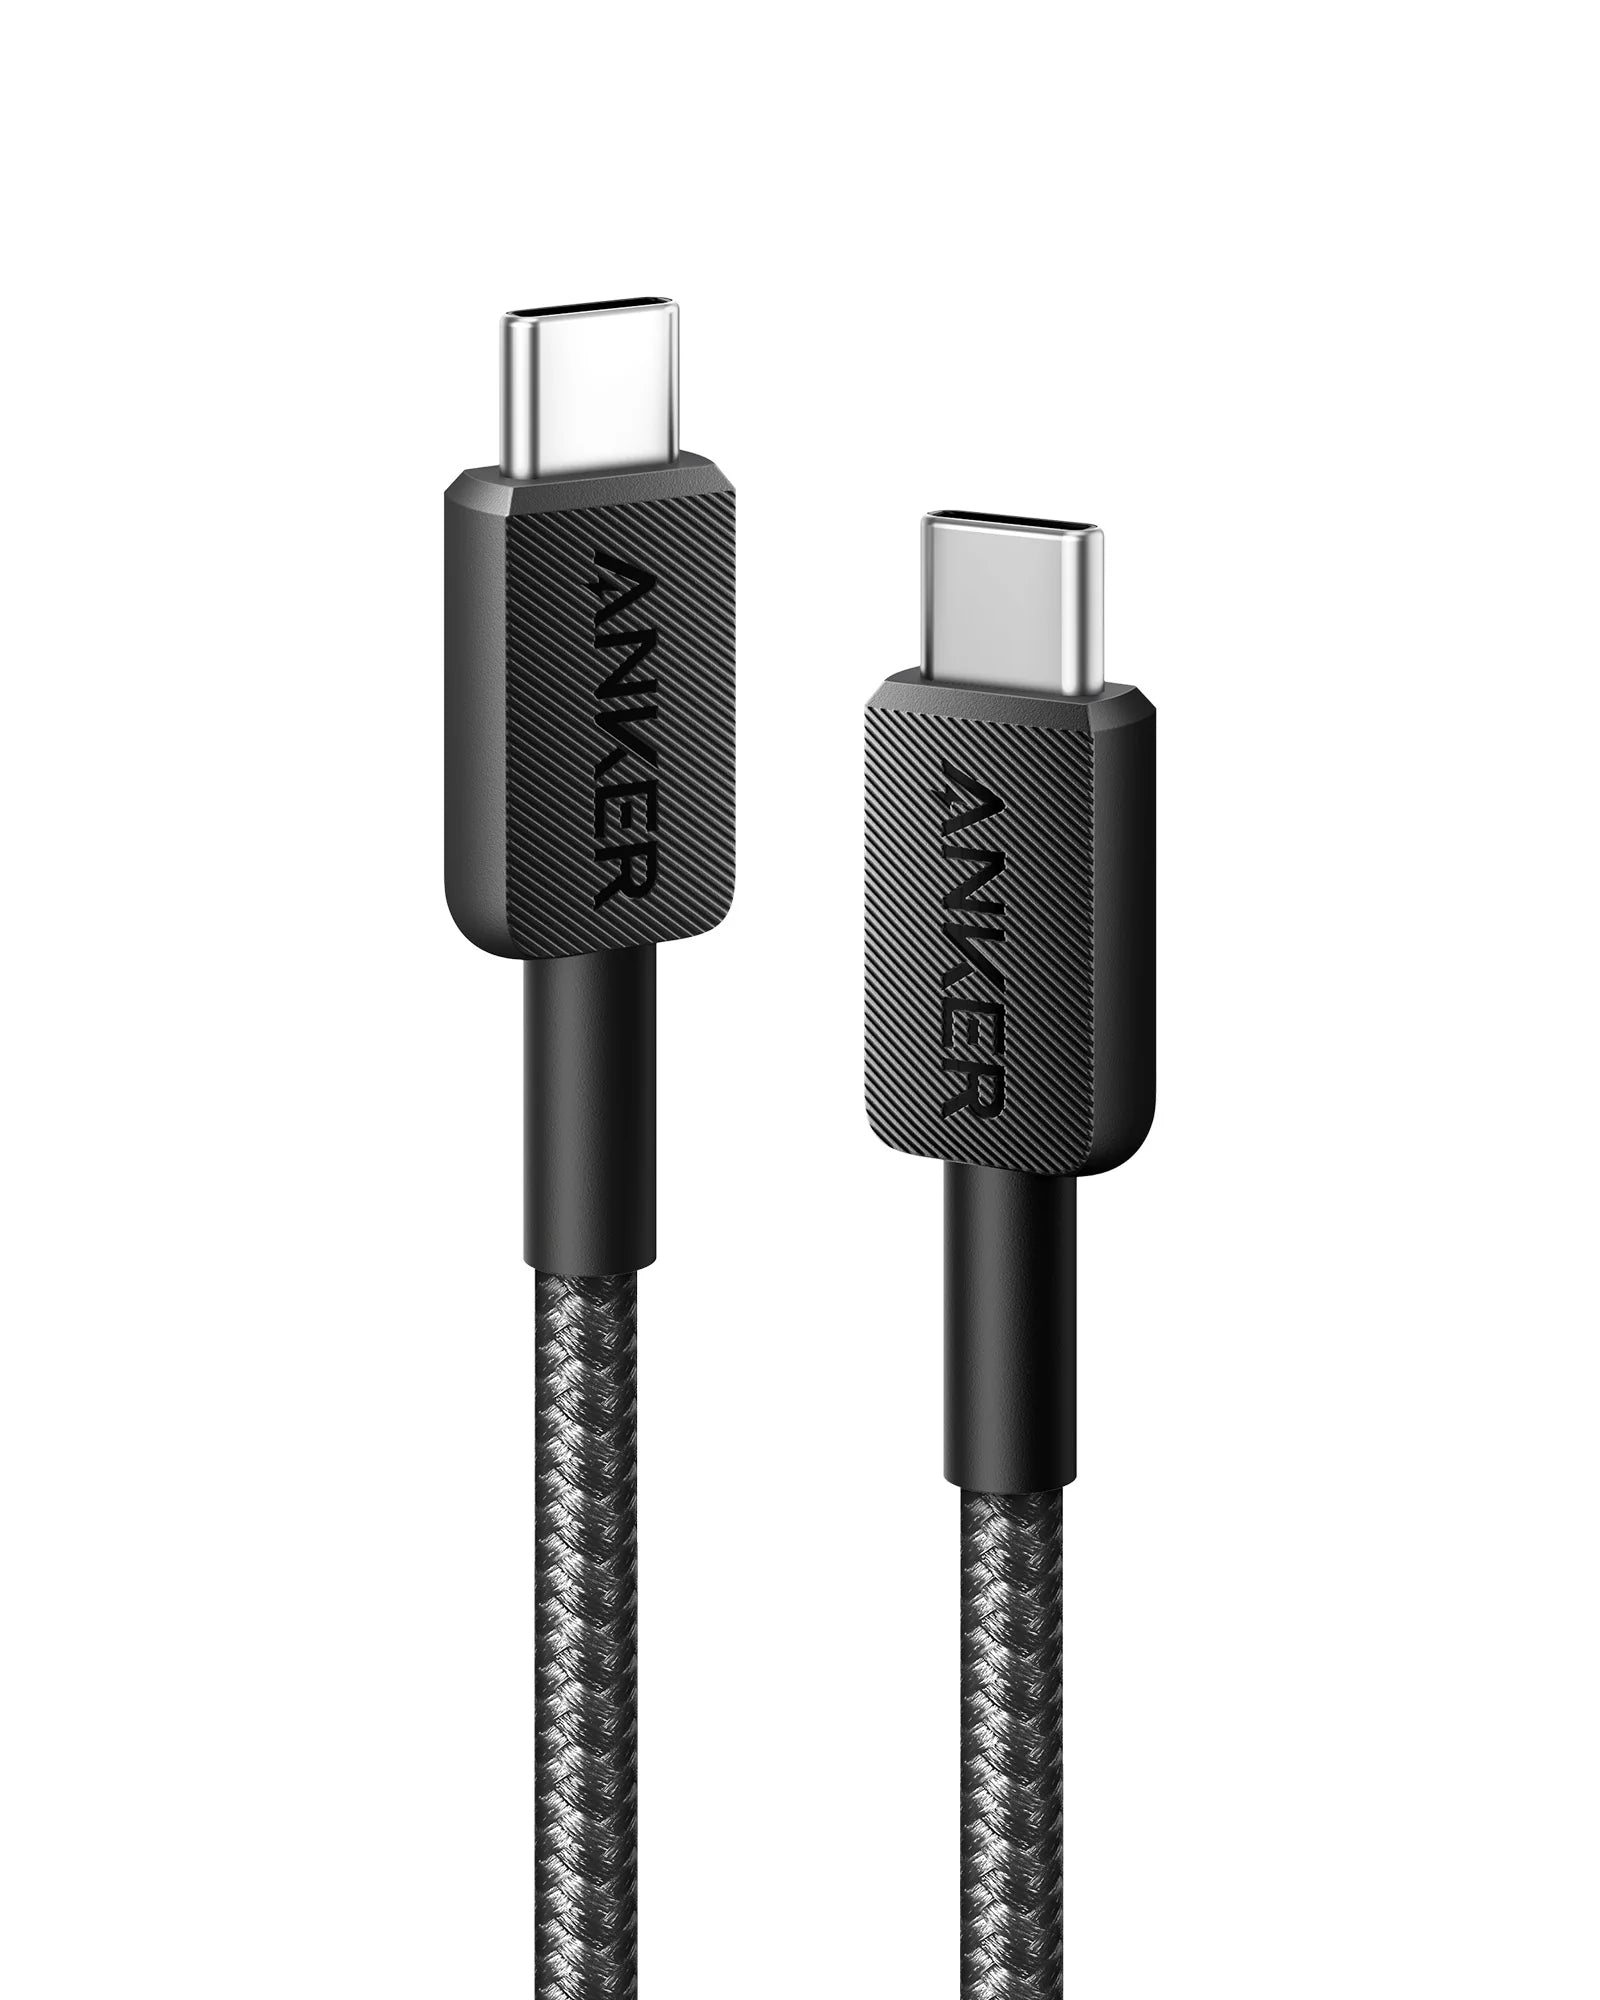 كابل Anker 322 USB-C إلى USB-C 60 وات مضفر 0.9 متر مع ضمان 18 شهرًا